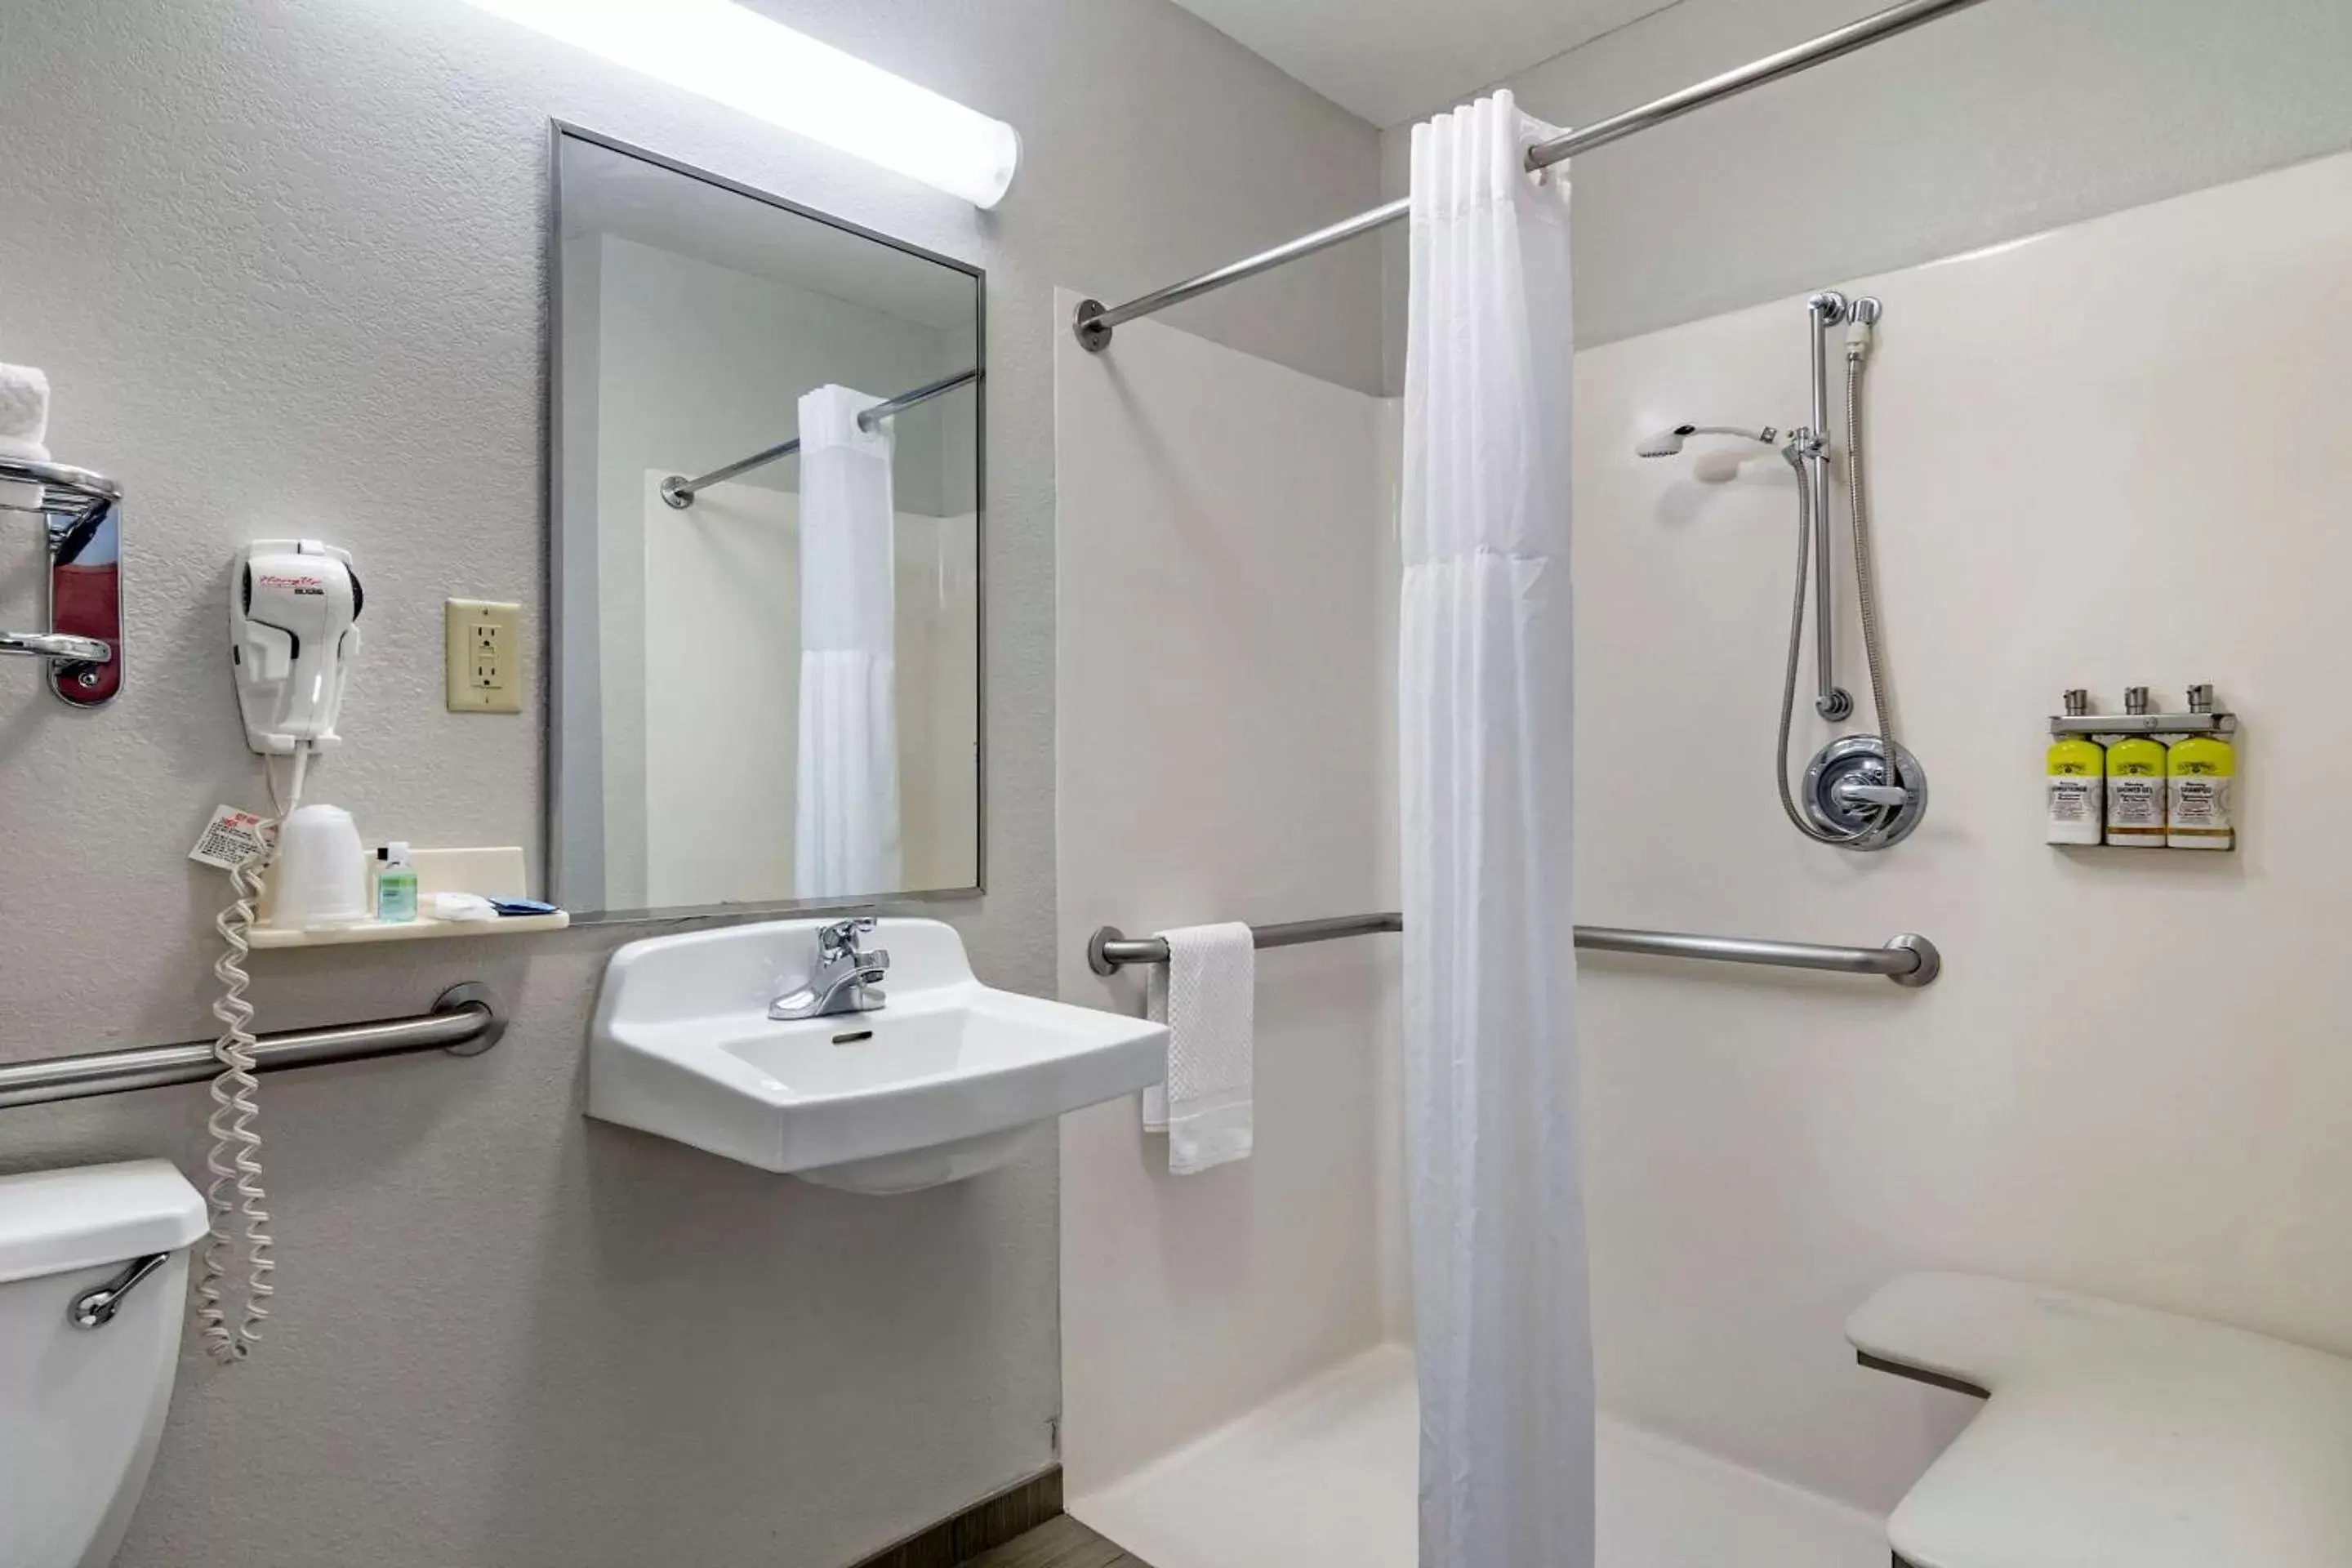 Bathroom in MainStay Suites Emporia